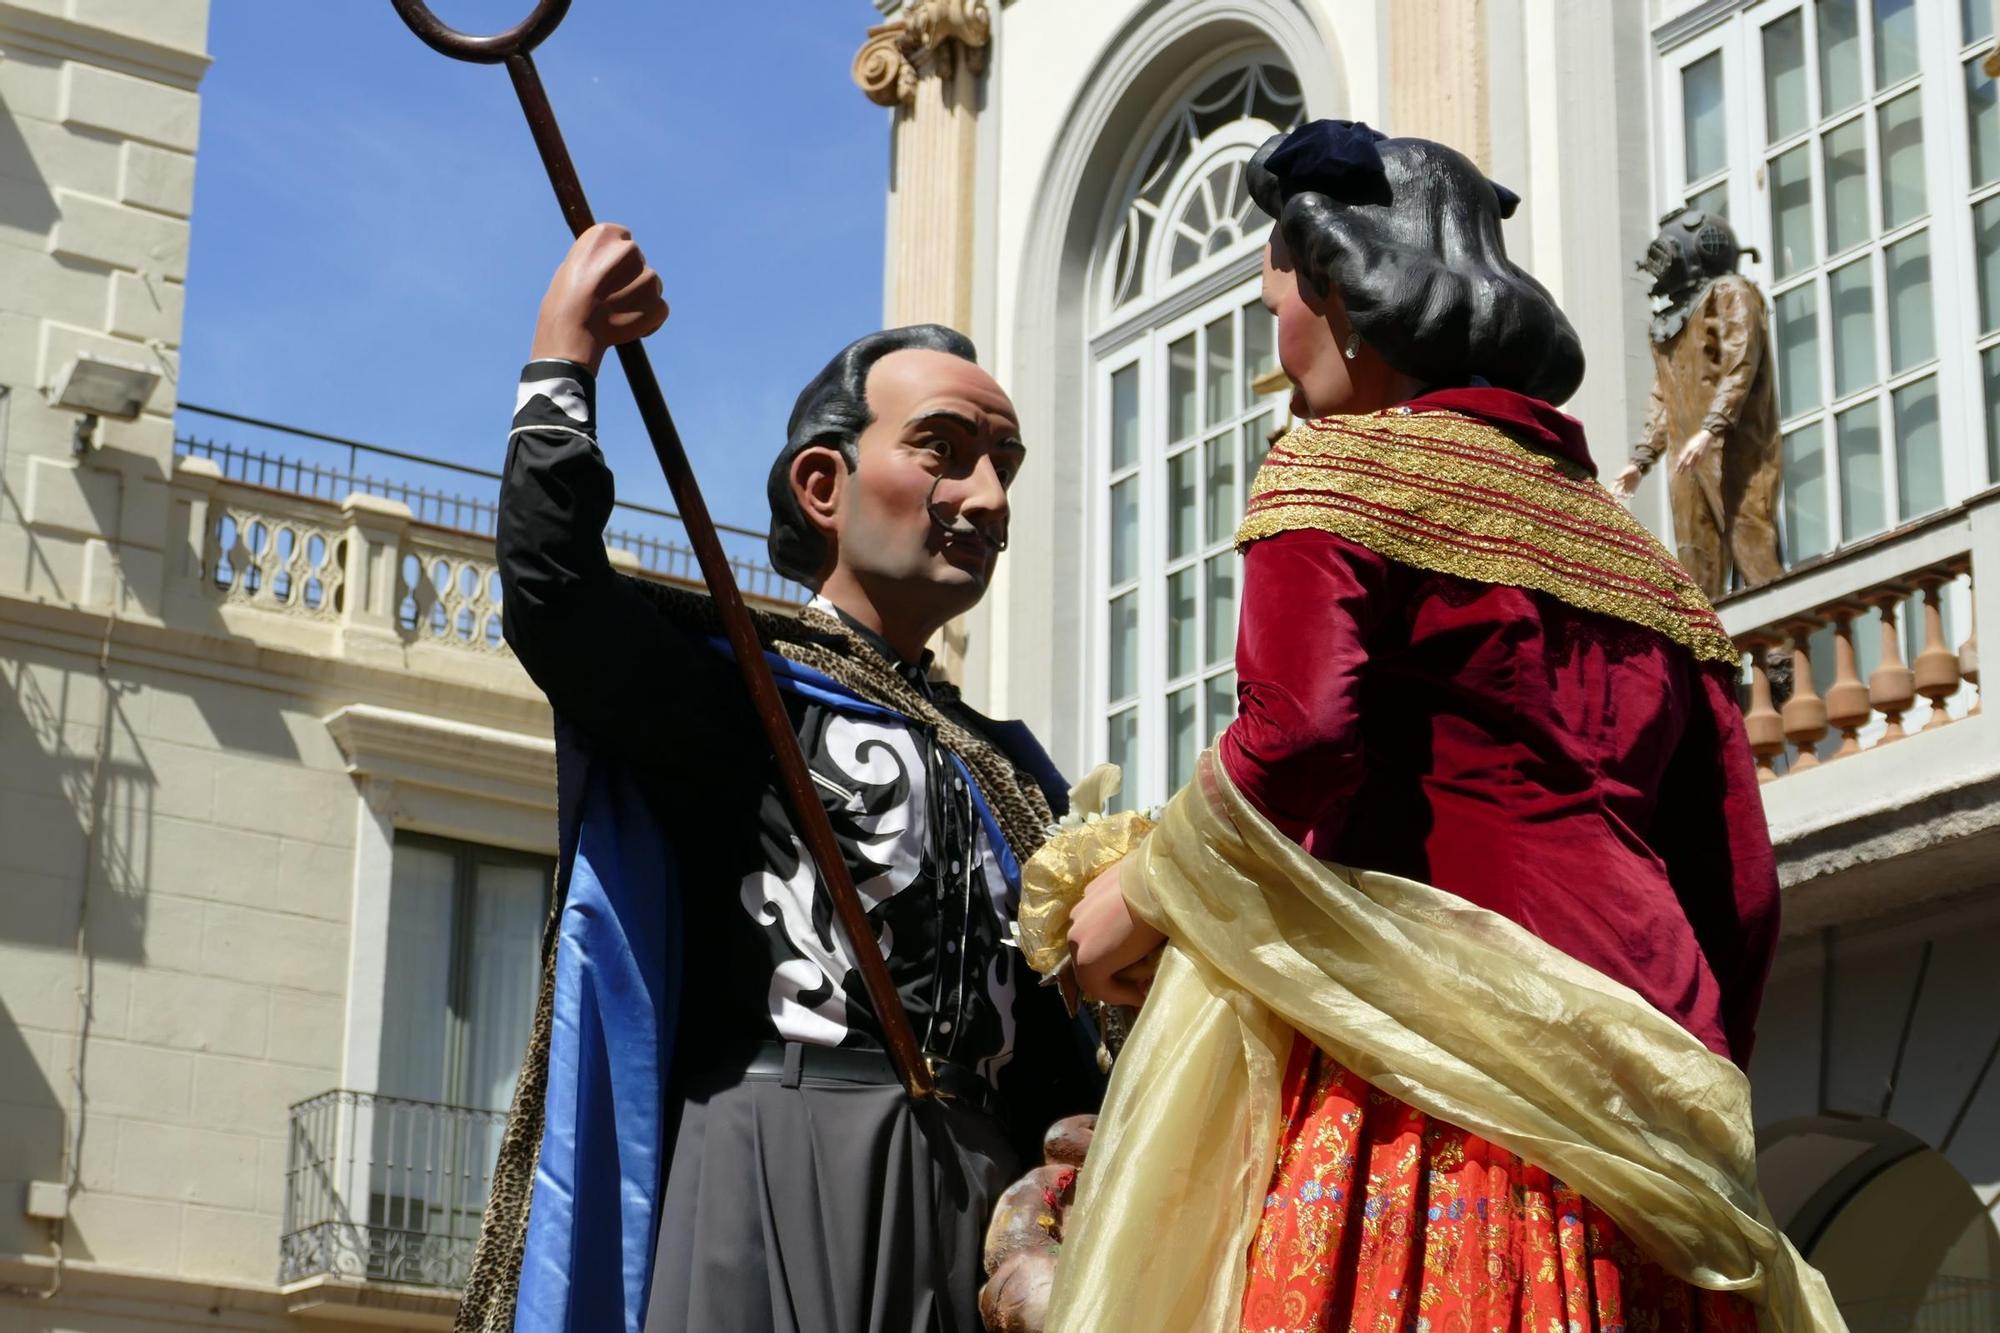 La trobada gegantera de Figueres celebra els 25 anys de la Gala i en Dalí amb el capgròs de Francesc Pujols